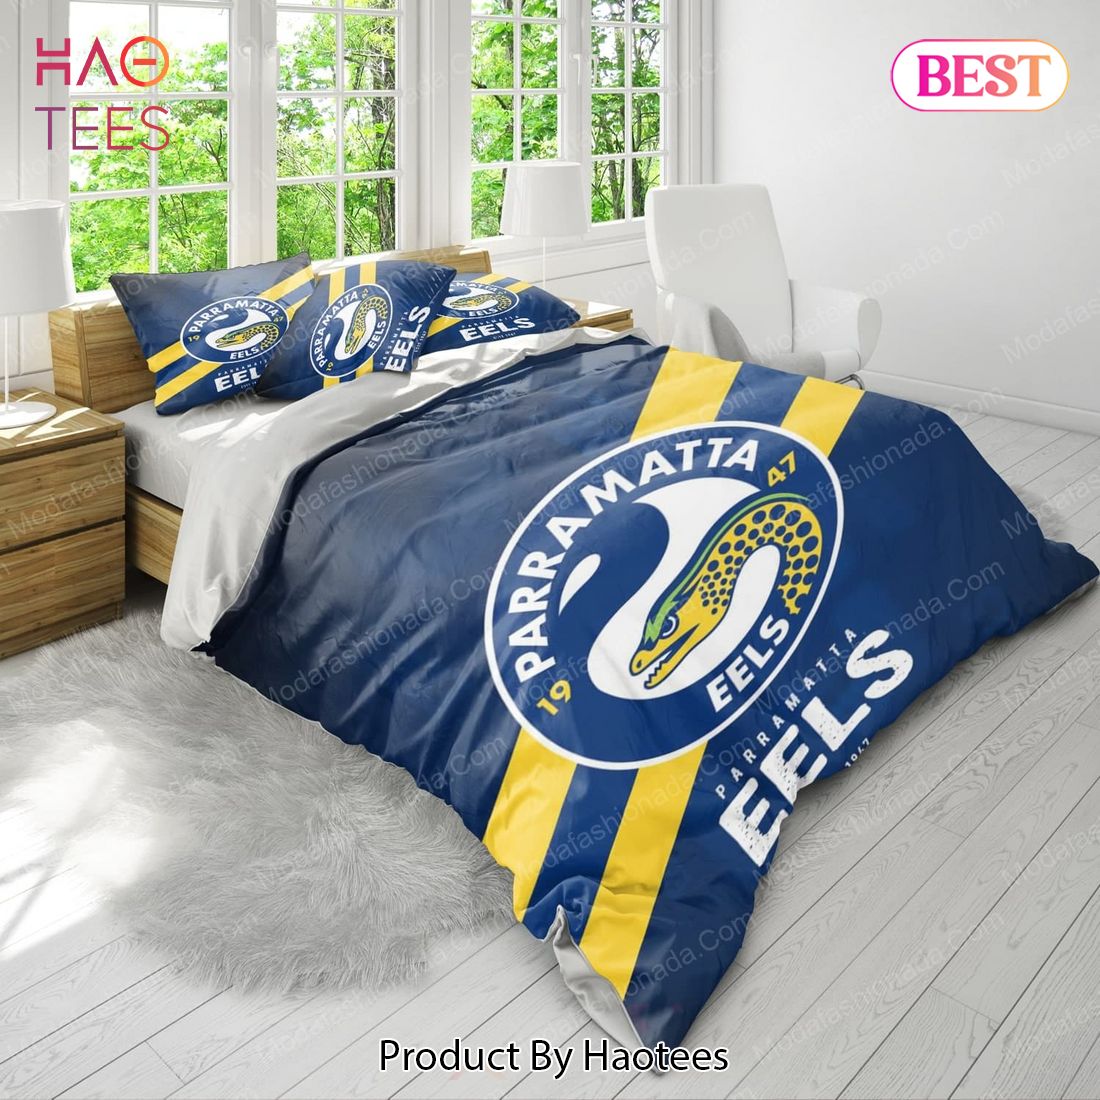 Parramatta Eels Logo Bedding Sets Bed Sets, Bedroom Sets, Comforter Sets, Duvet Cover, Bedspread